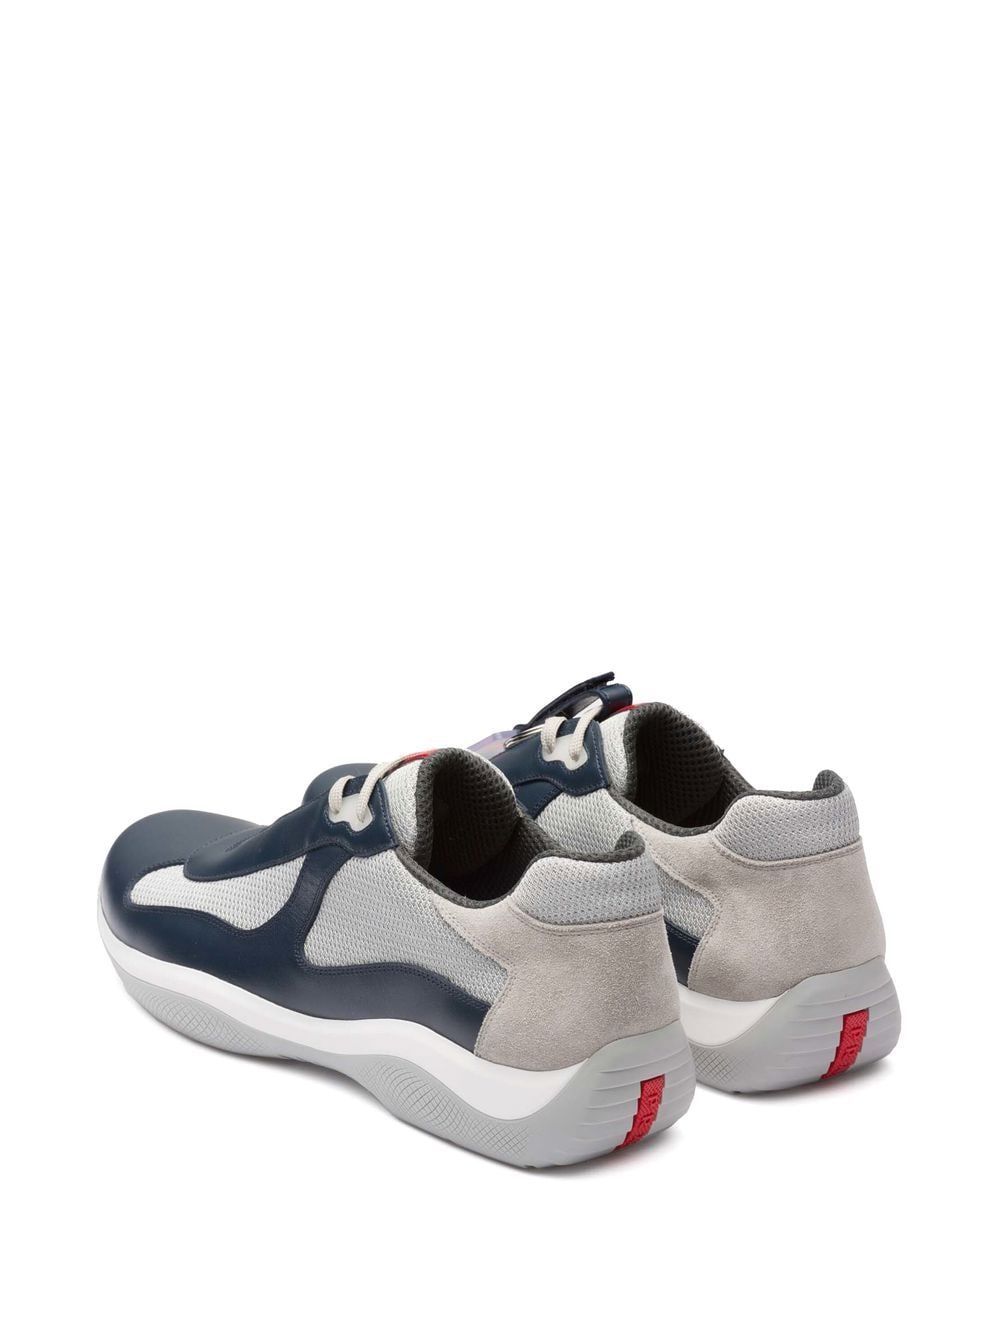 Prada America's Cup Original Lace-up Sneakers In Ultramarine | ModeSens